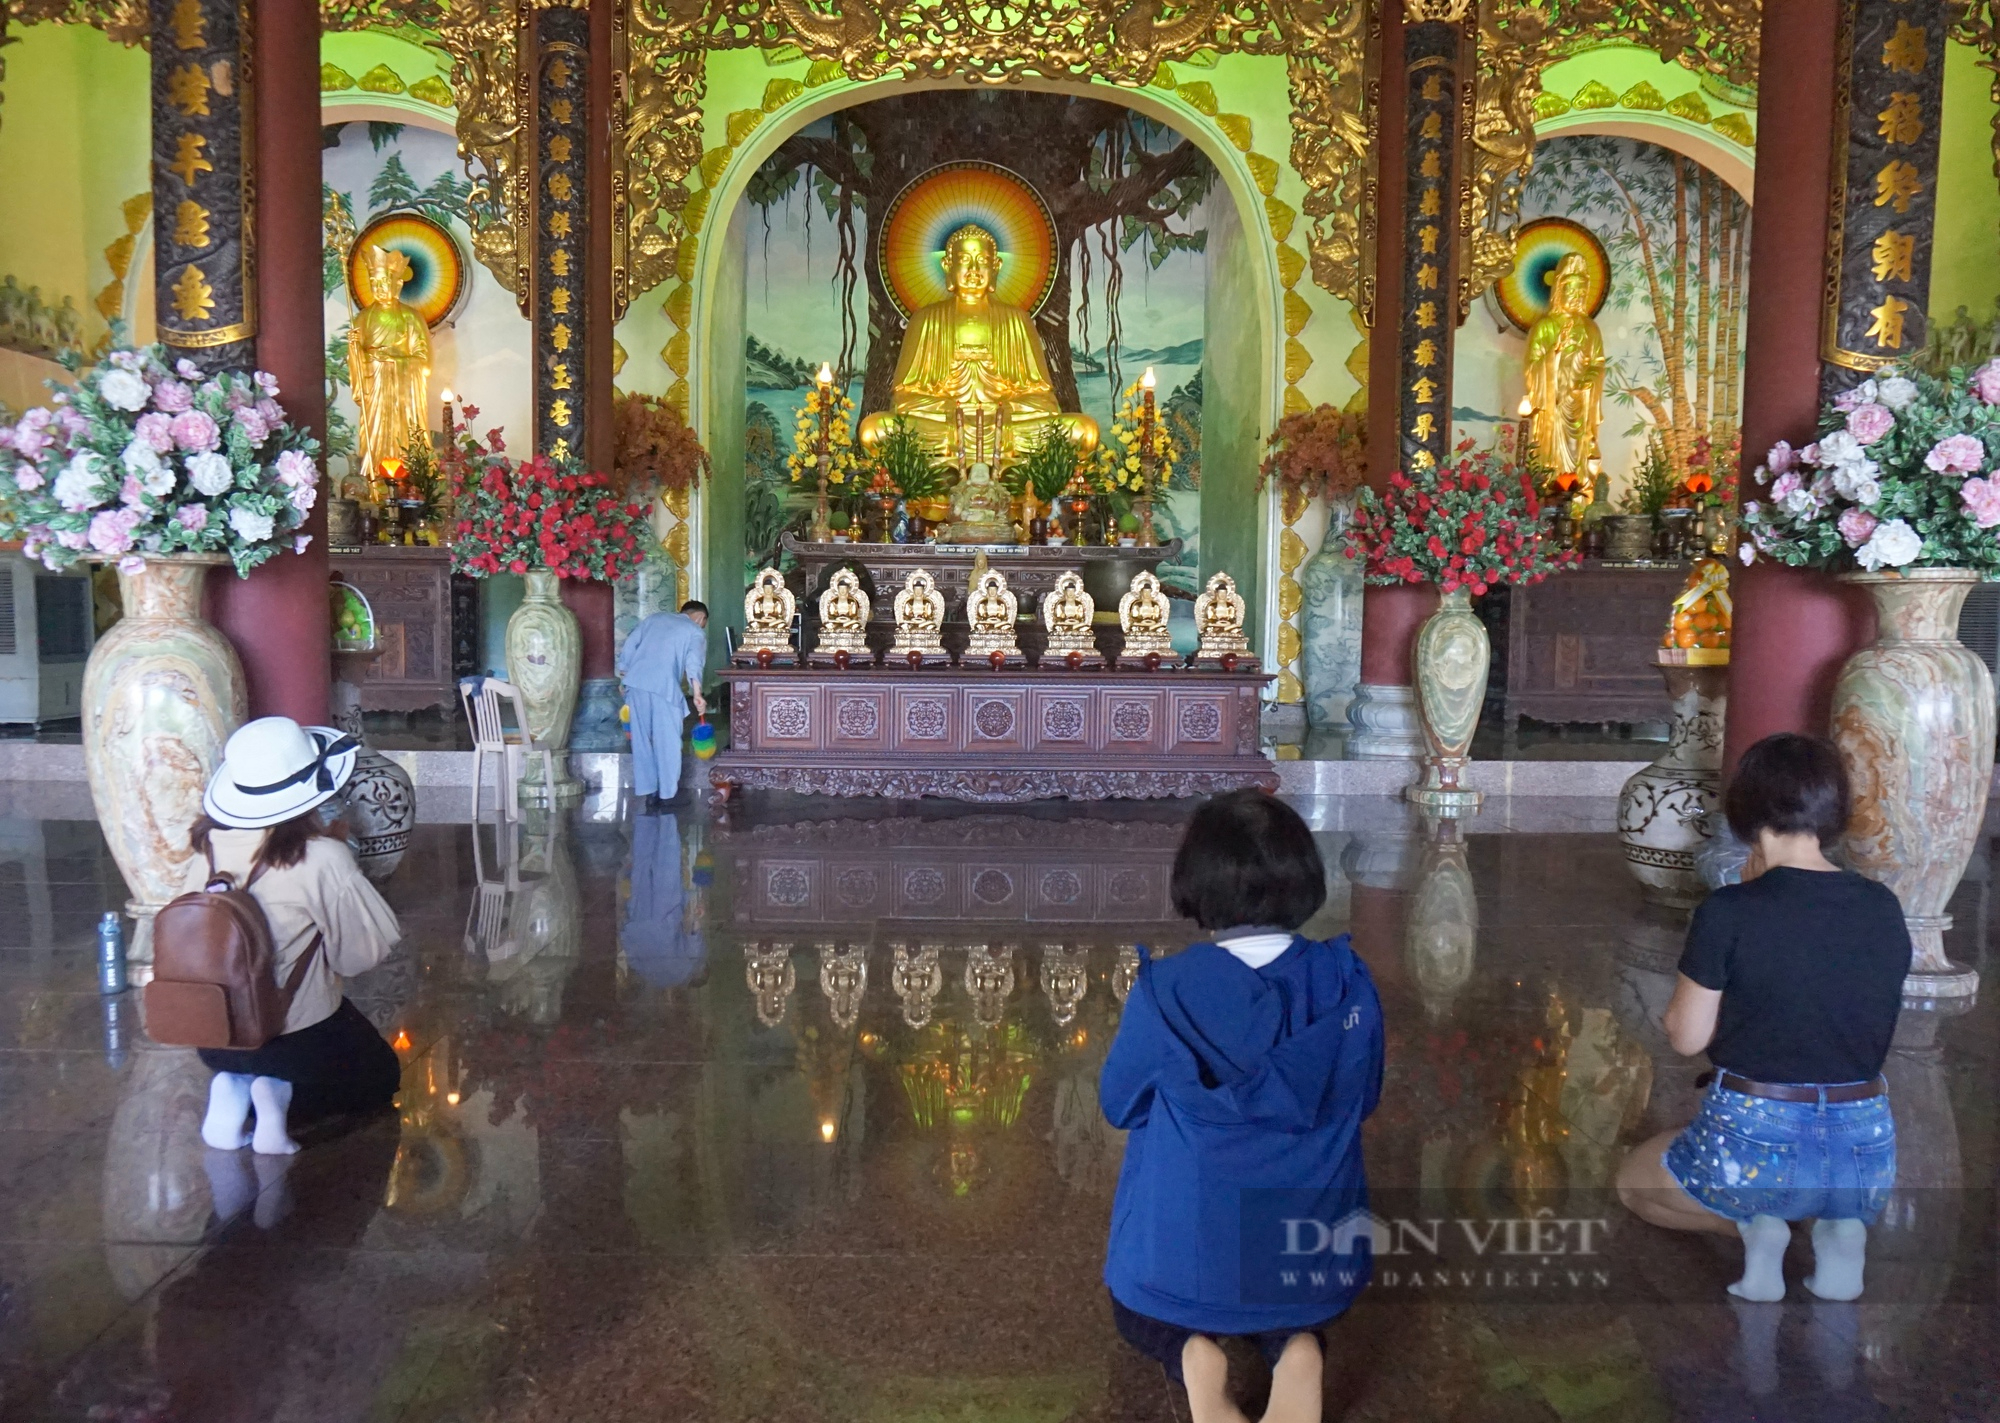 Đà Nẵng: Ngôi chùa nổi tiếng với những cái nhất hút du khách - Ảnh 9.